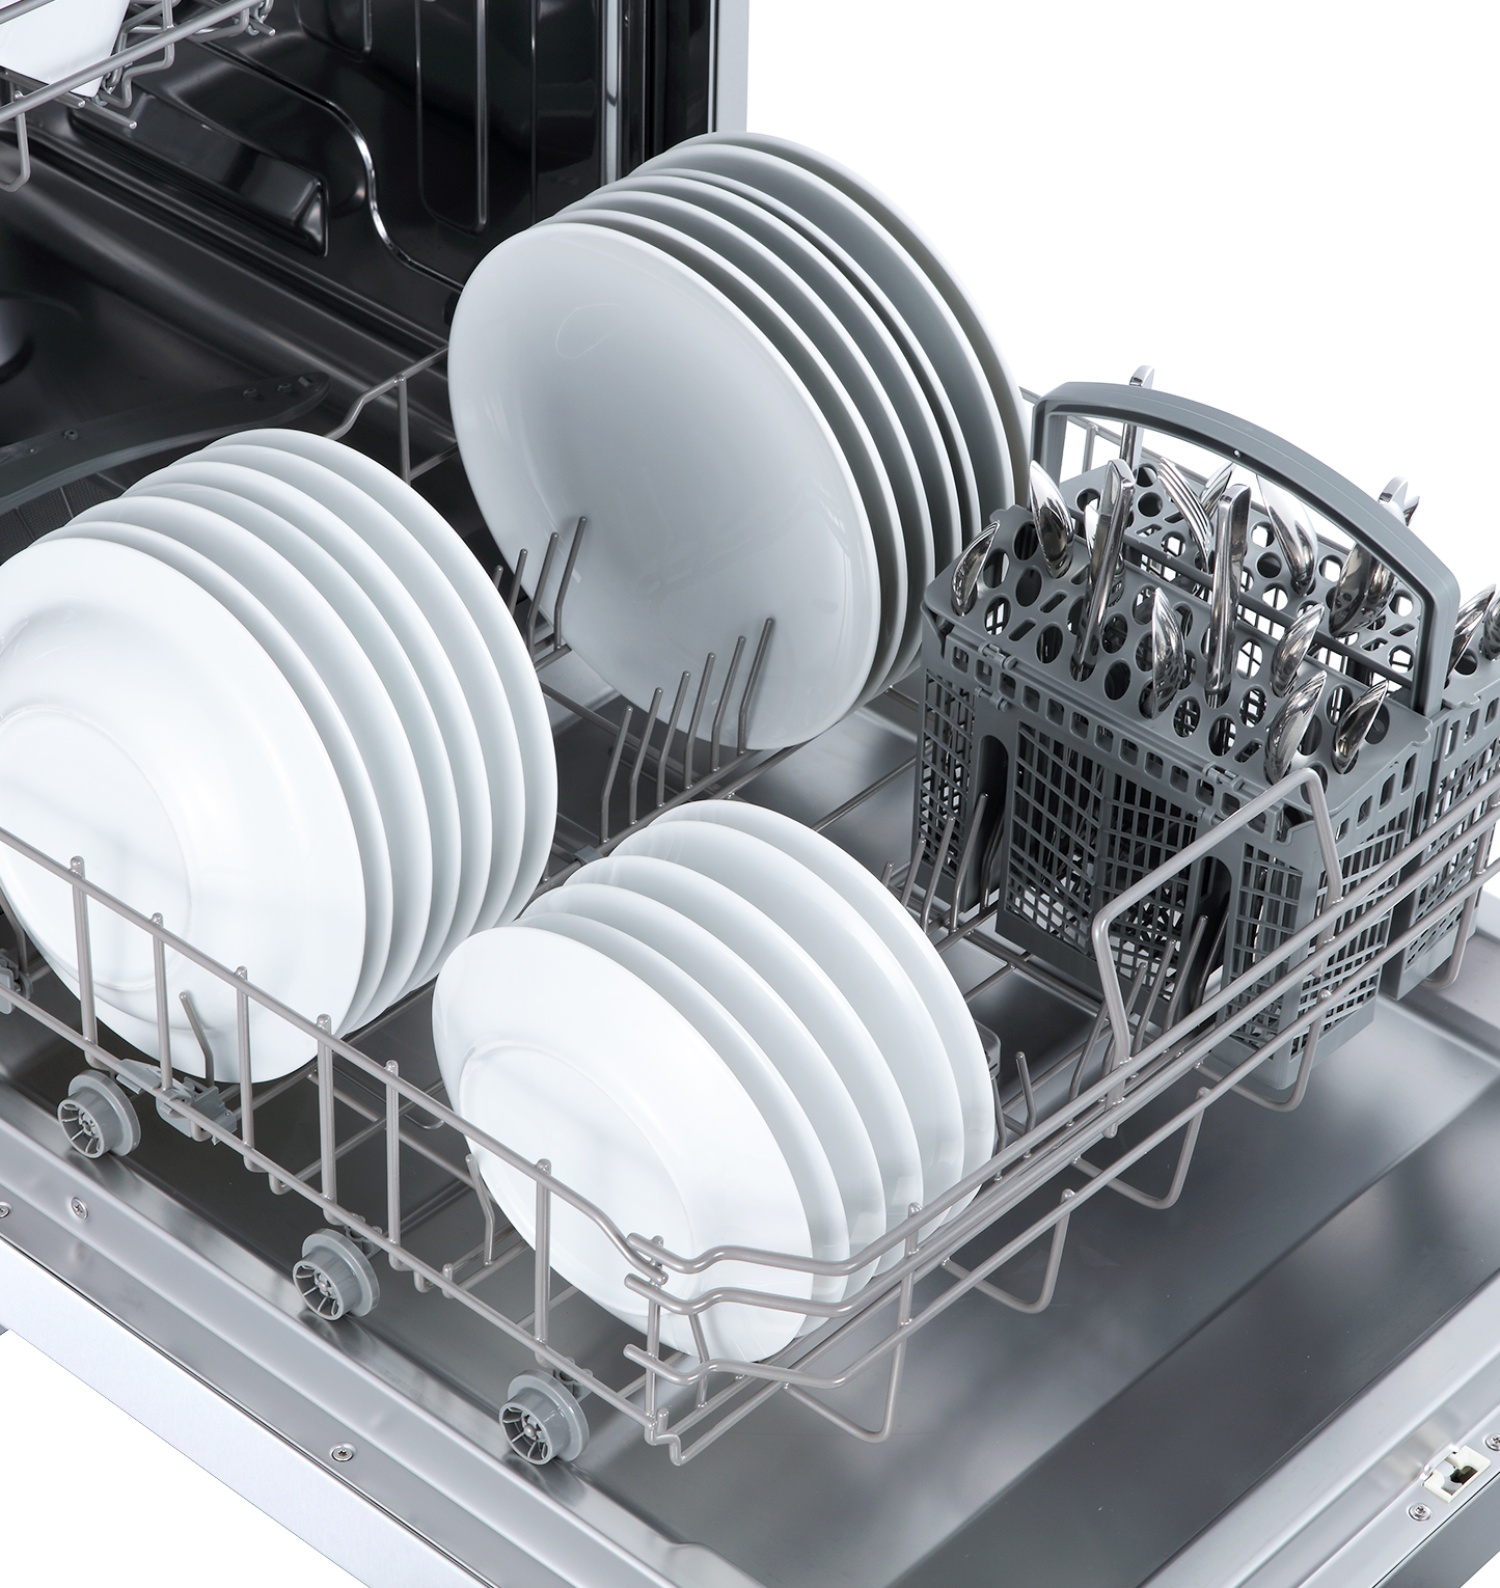 Отдельностоящая посудомоечная машина LEX DW 6062 WH